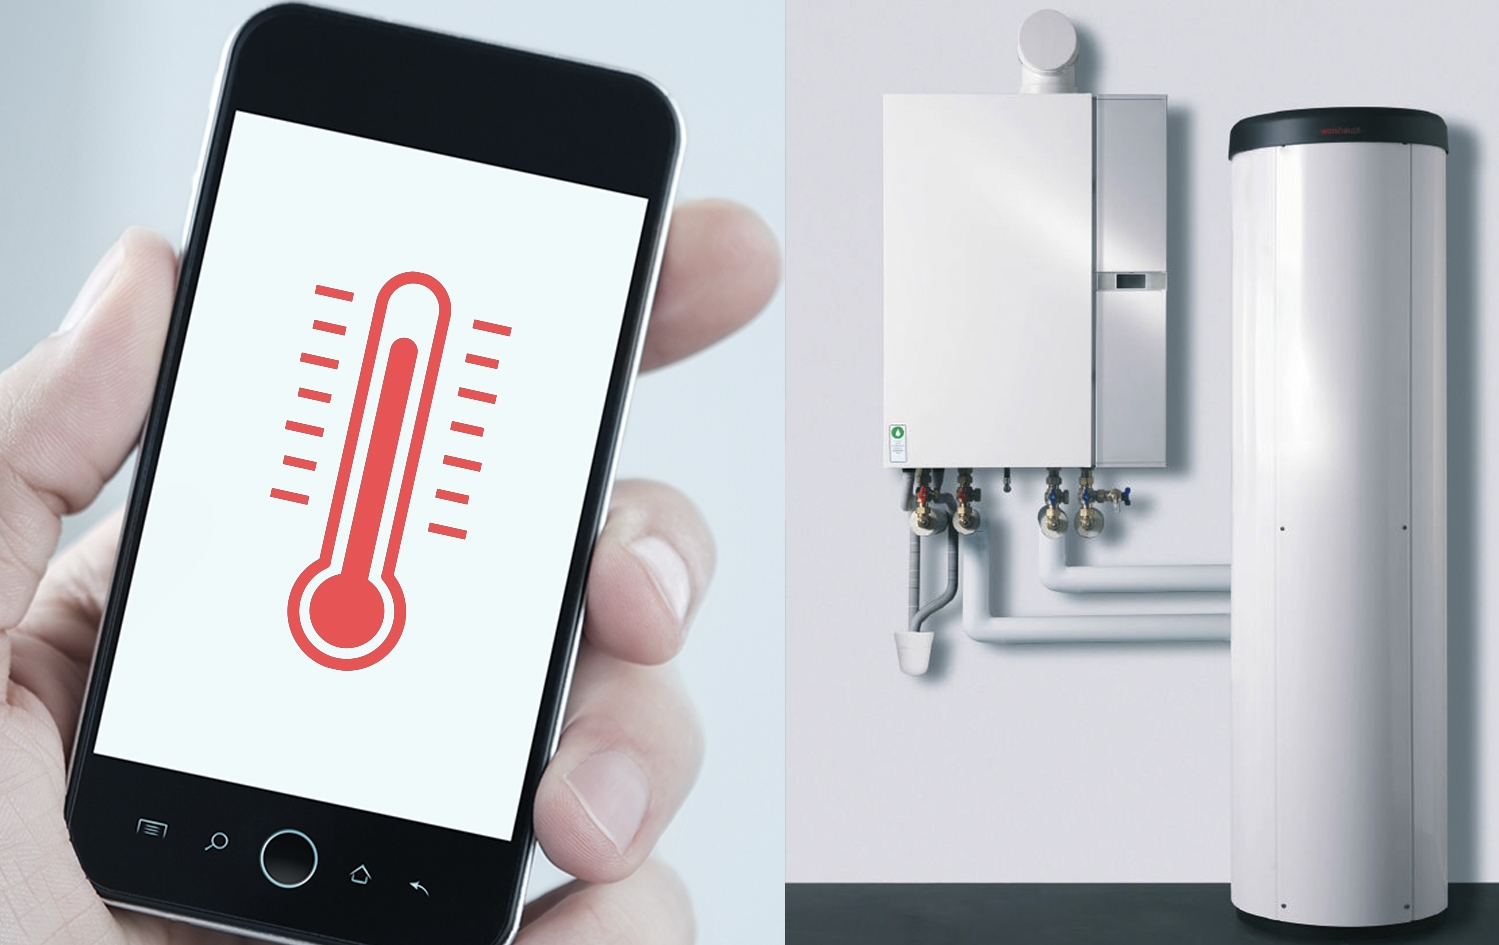 Как включить отопление на даче с помощью телефона? самый простой и дешевый способ - умная розетка